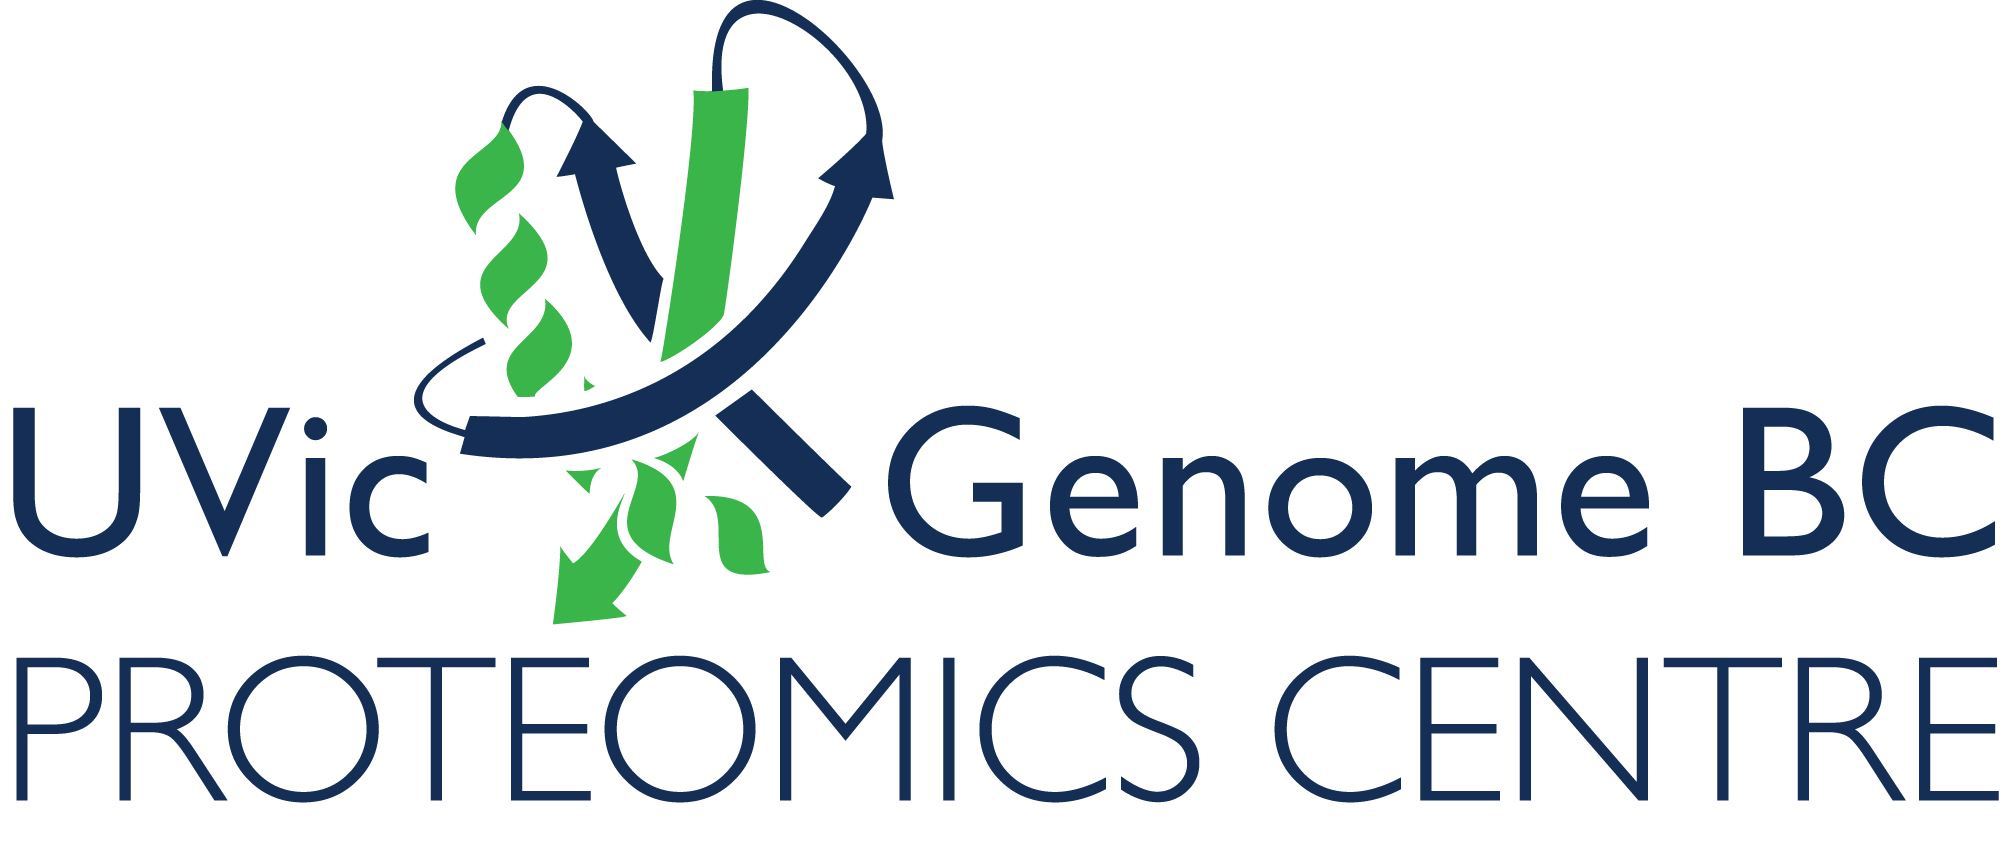 UVic Genome BC Proteomics Centre